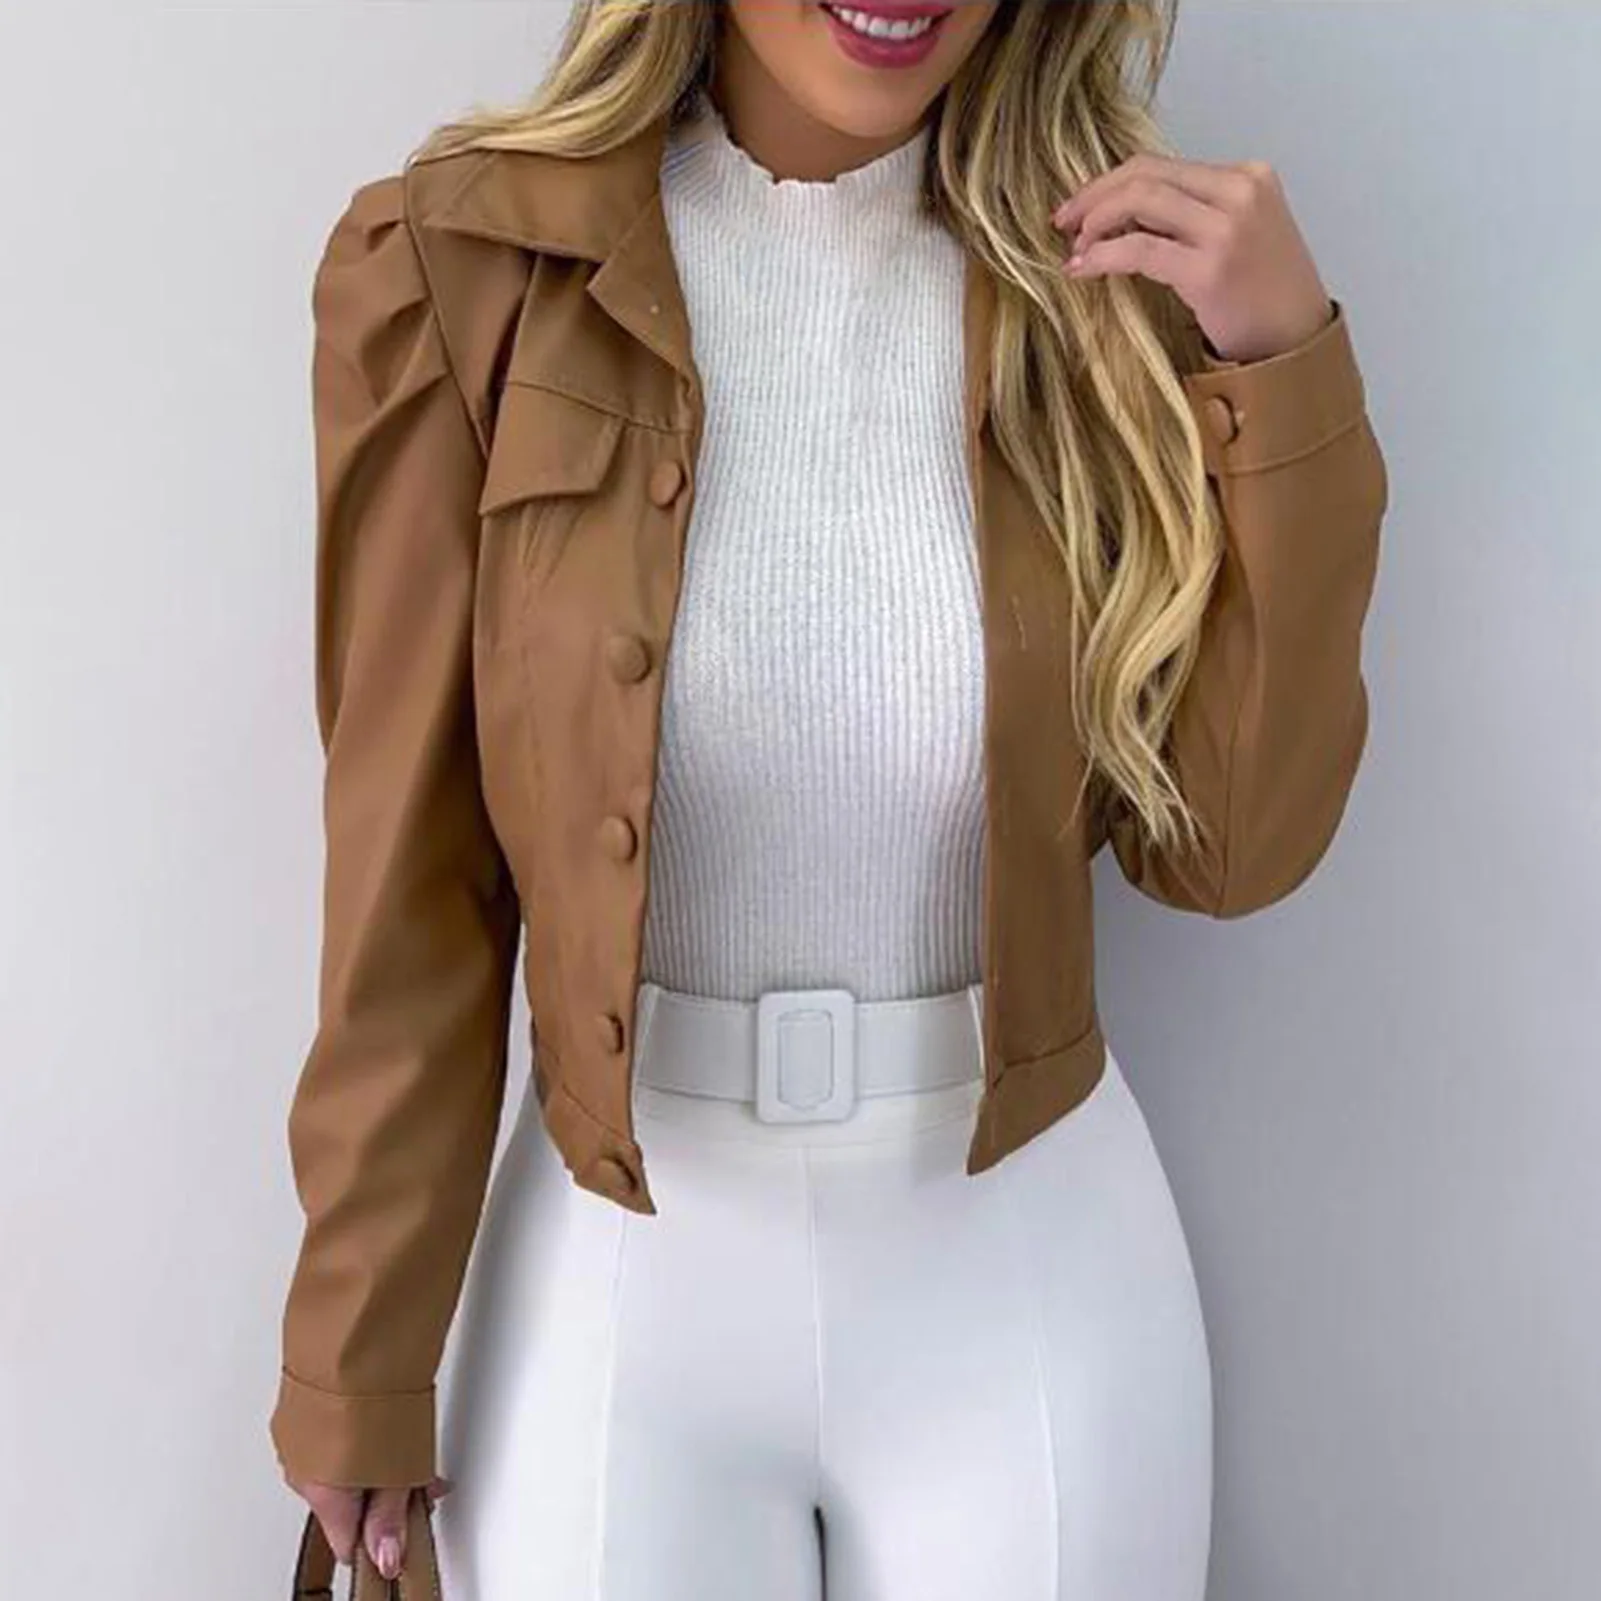 Women Fashion Streetwear Faux Leather Long Sleeve Buttons Jacket Coat Short Slim Outerwear Cardigan